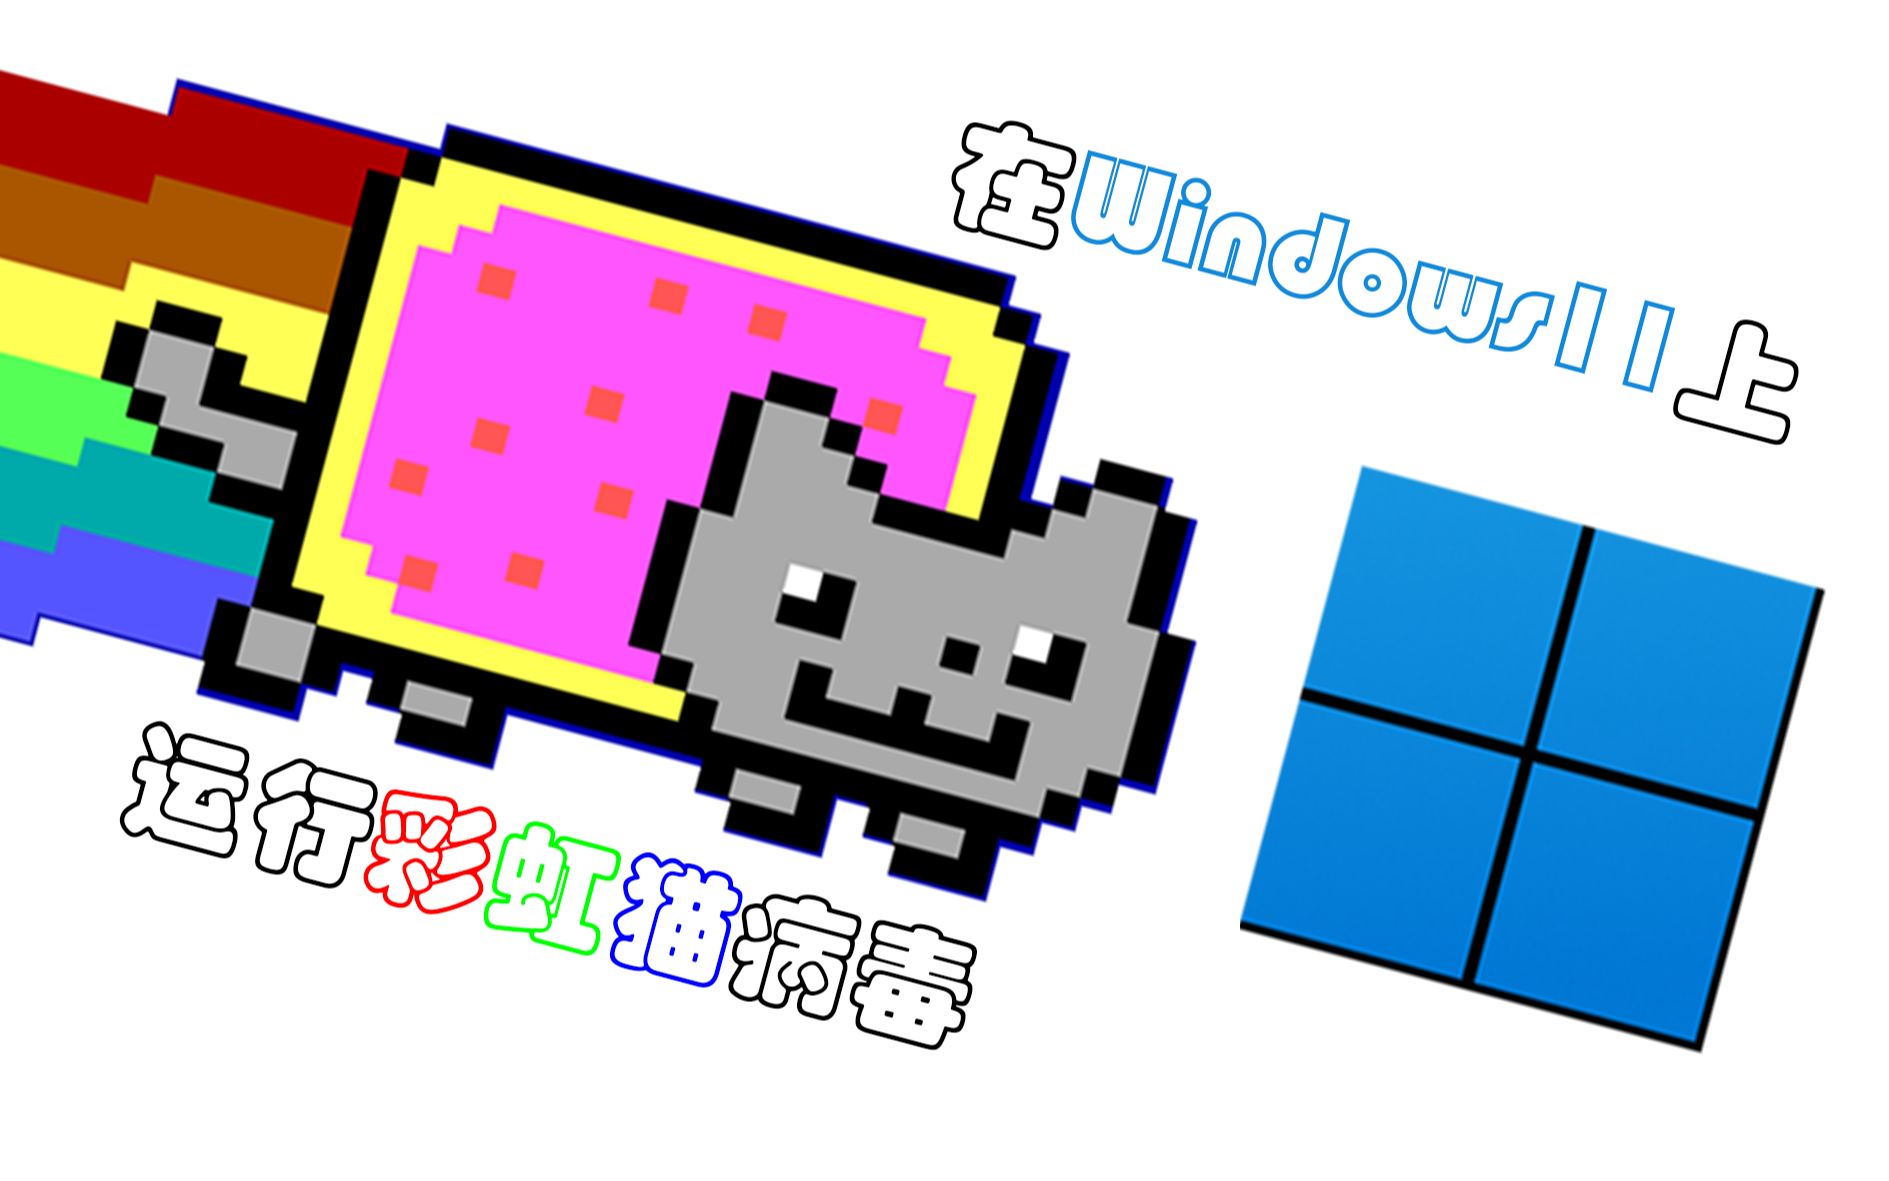 彩虹小猫电脑病毒图片